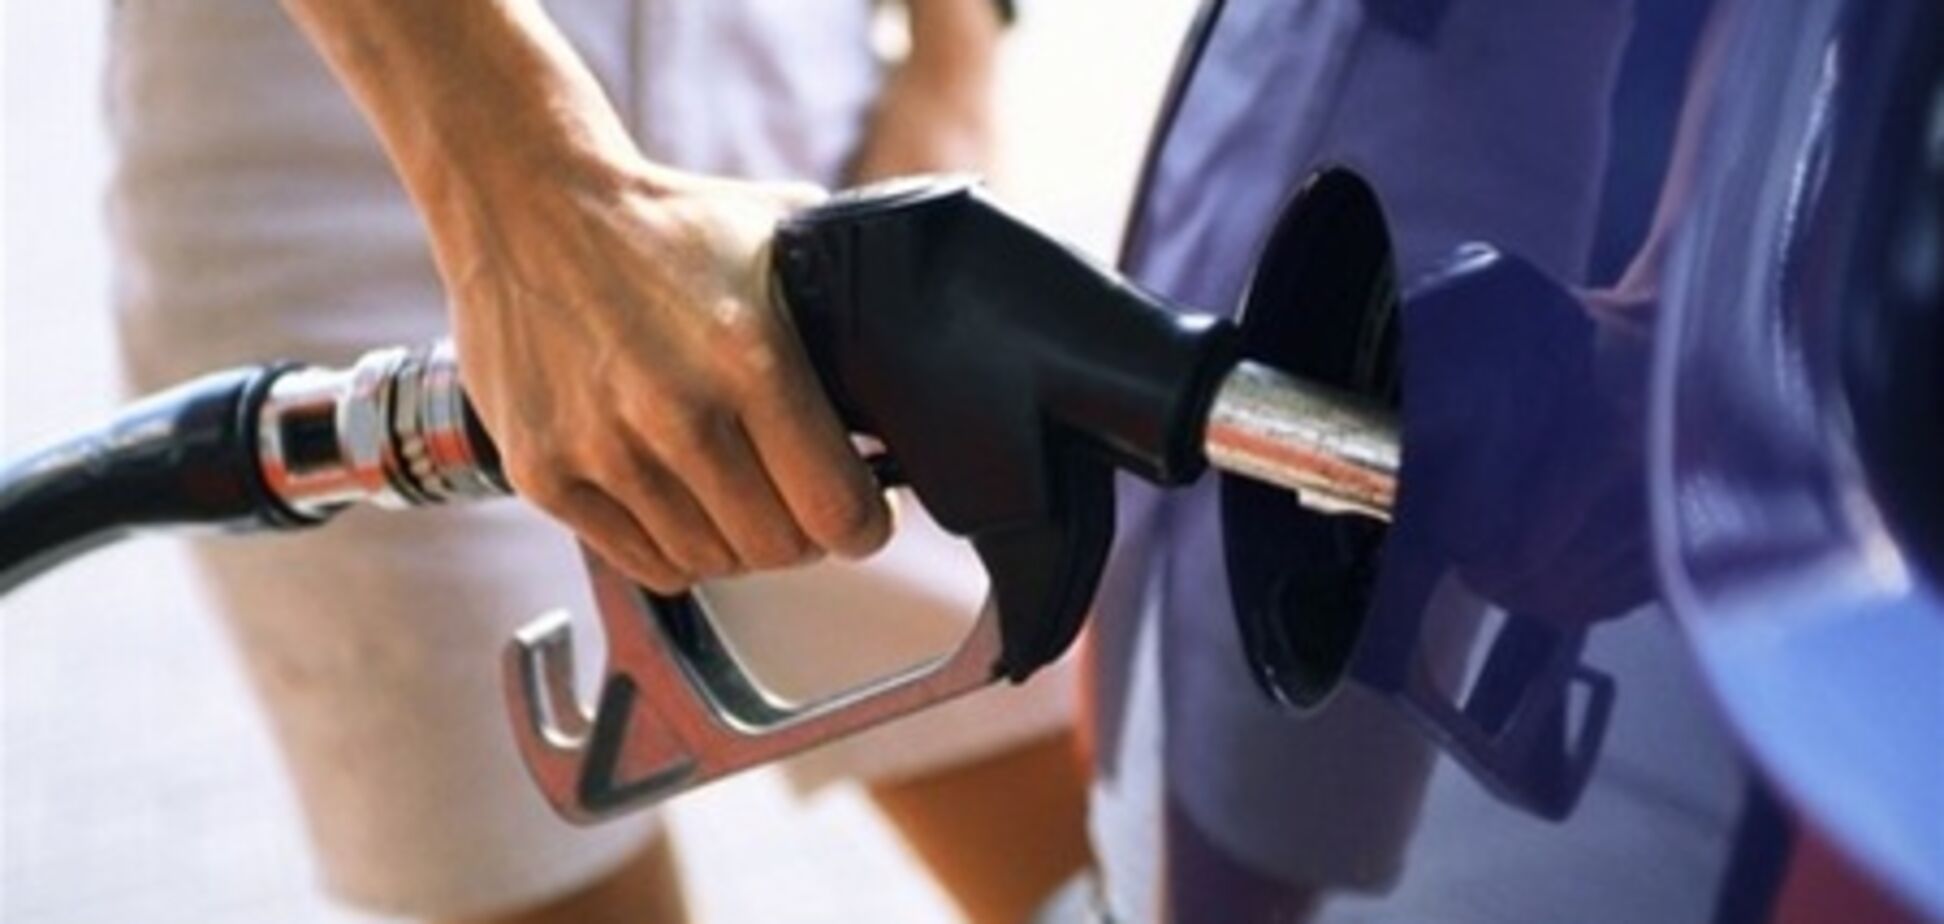 В Украине растут цены на бензин